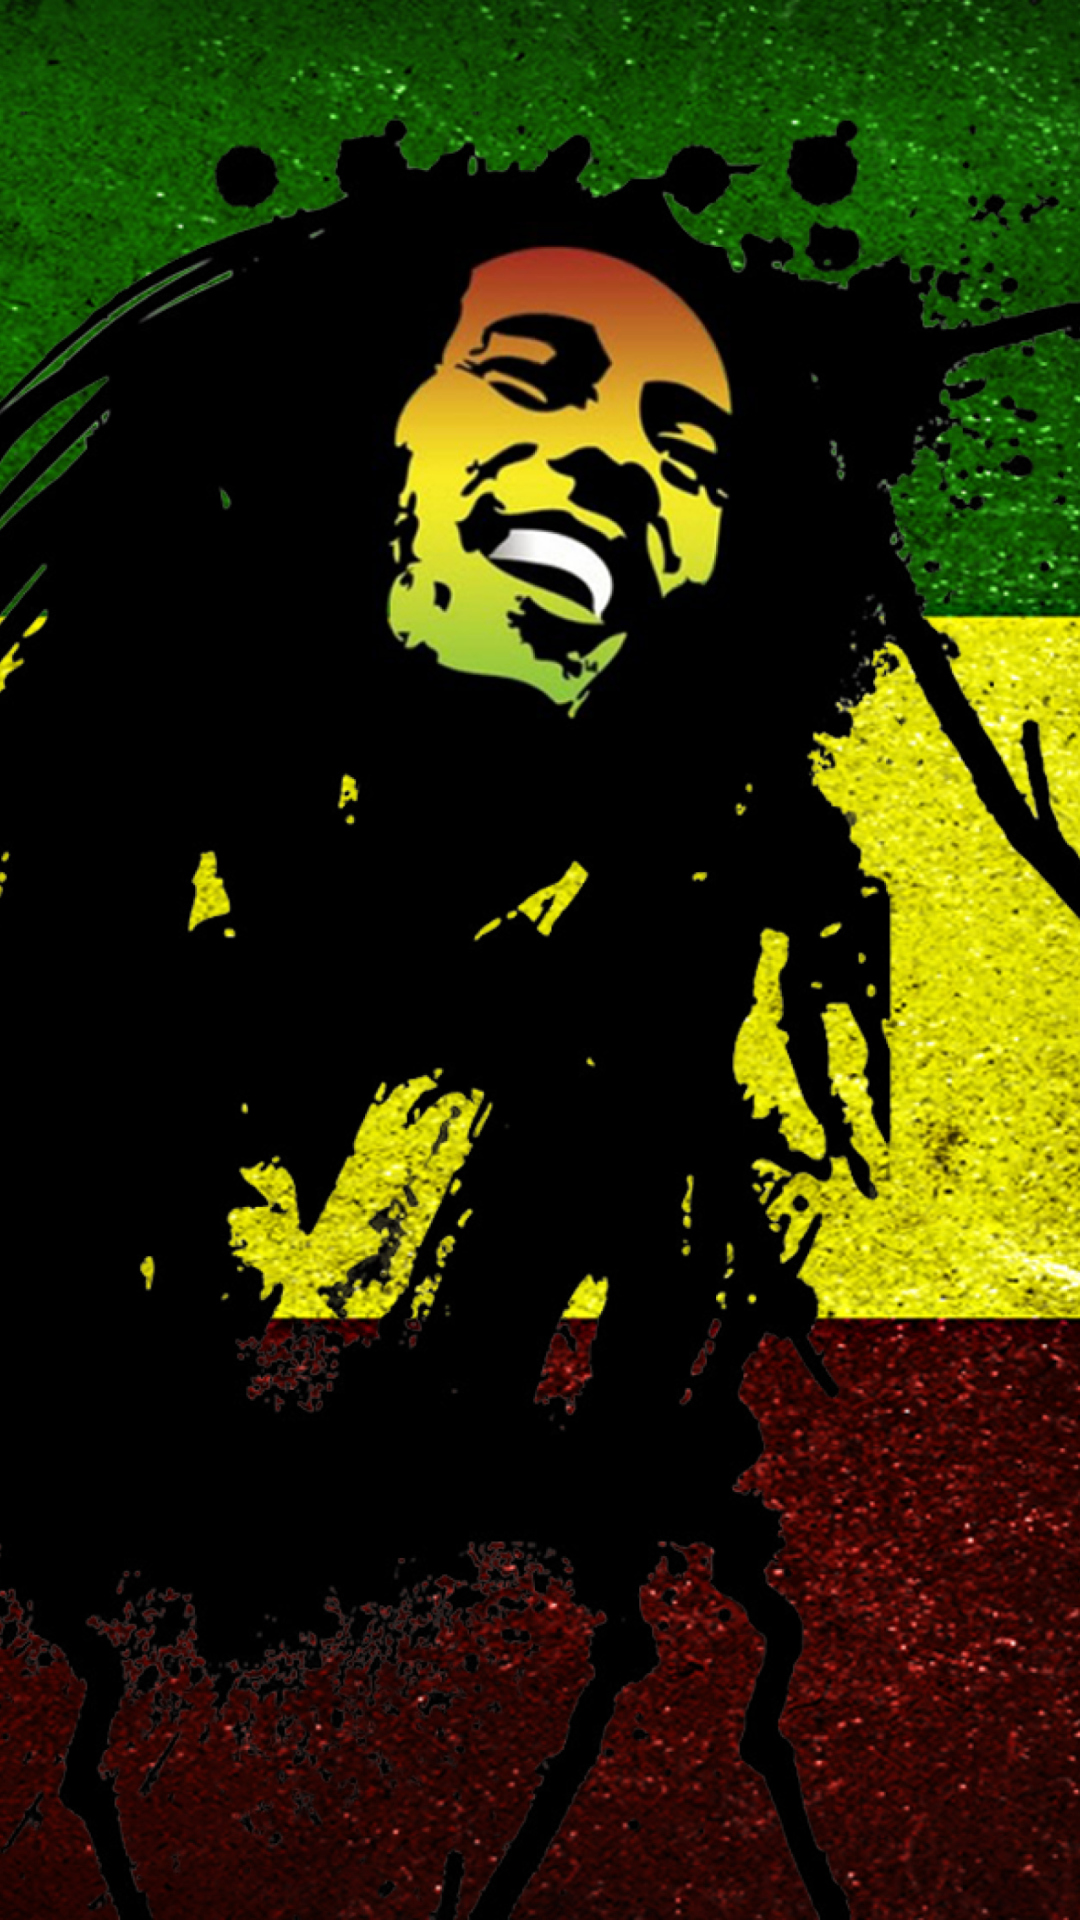 Bob Marley Rasta Reggae Culture wallpaper 1080x1920